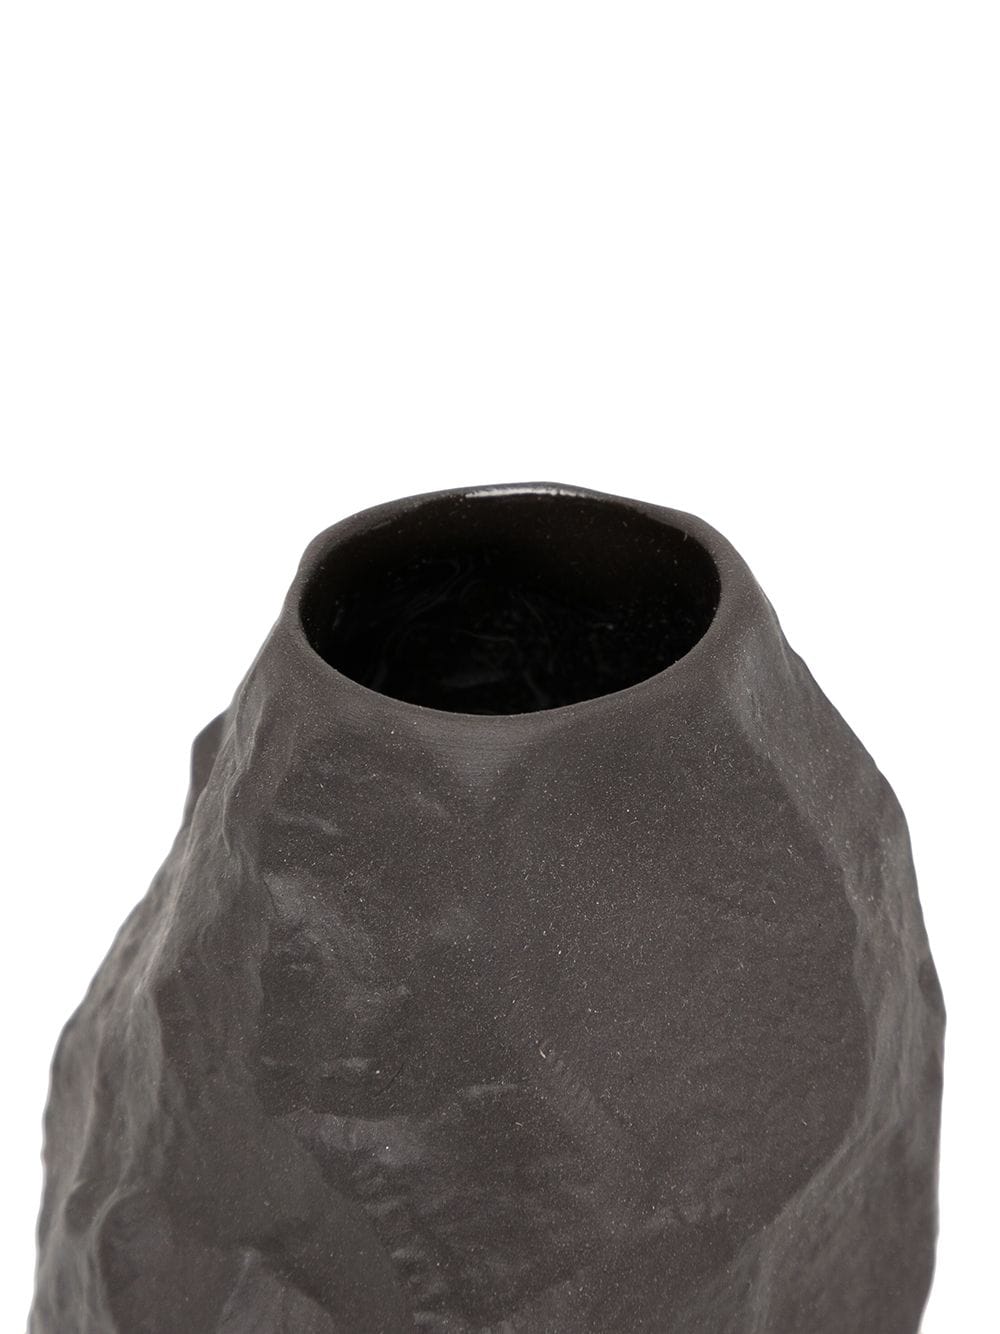 Shop 1882 Ltd Posy Bone China Vase In Black